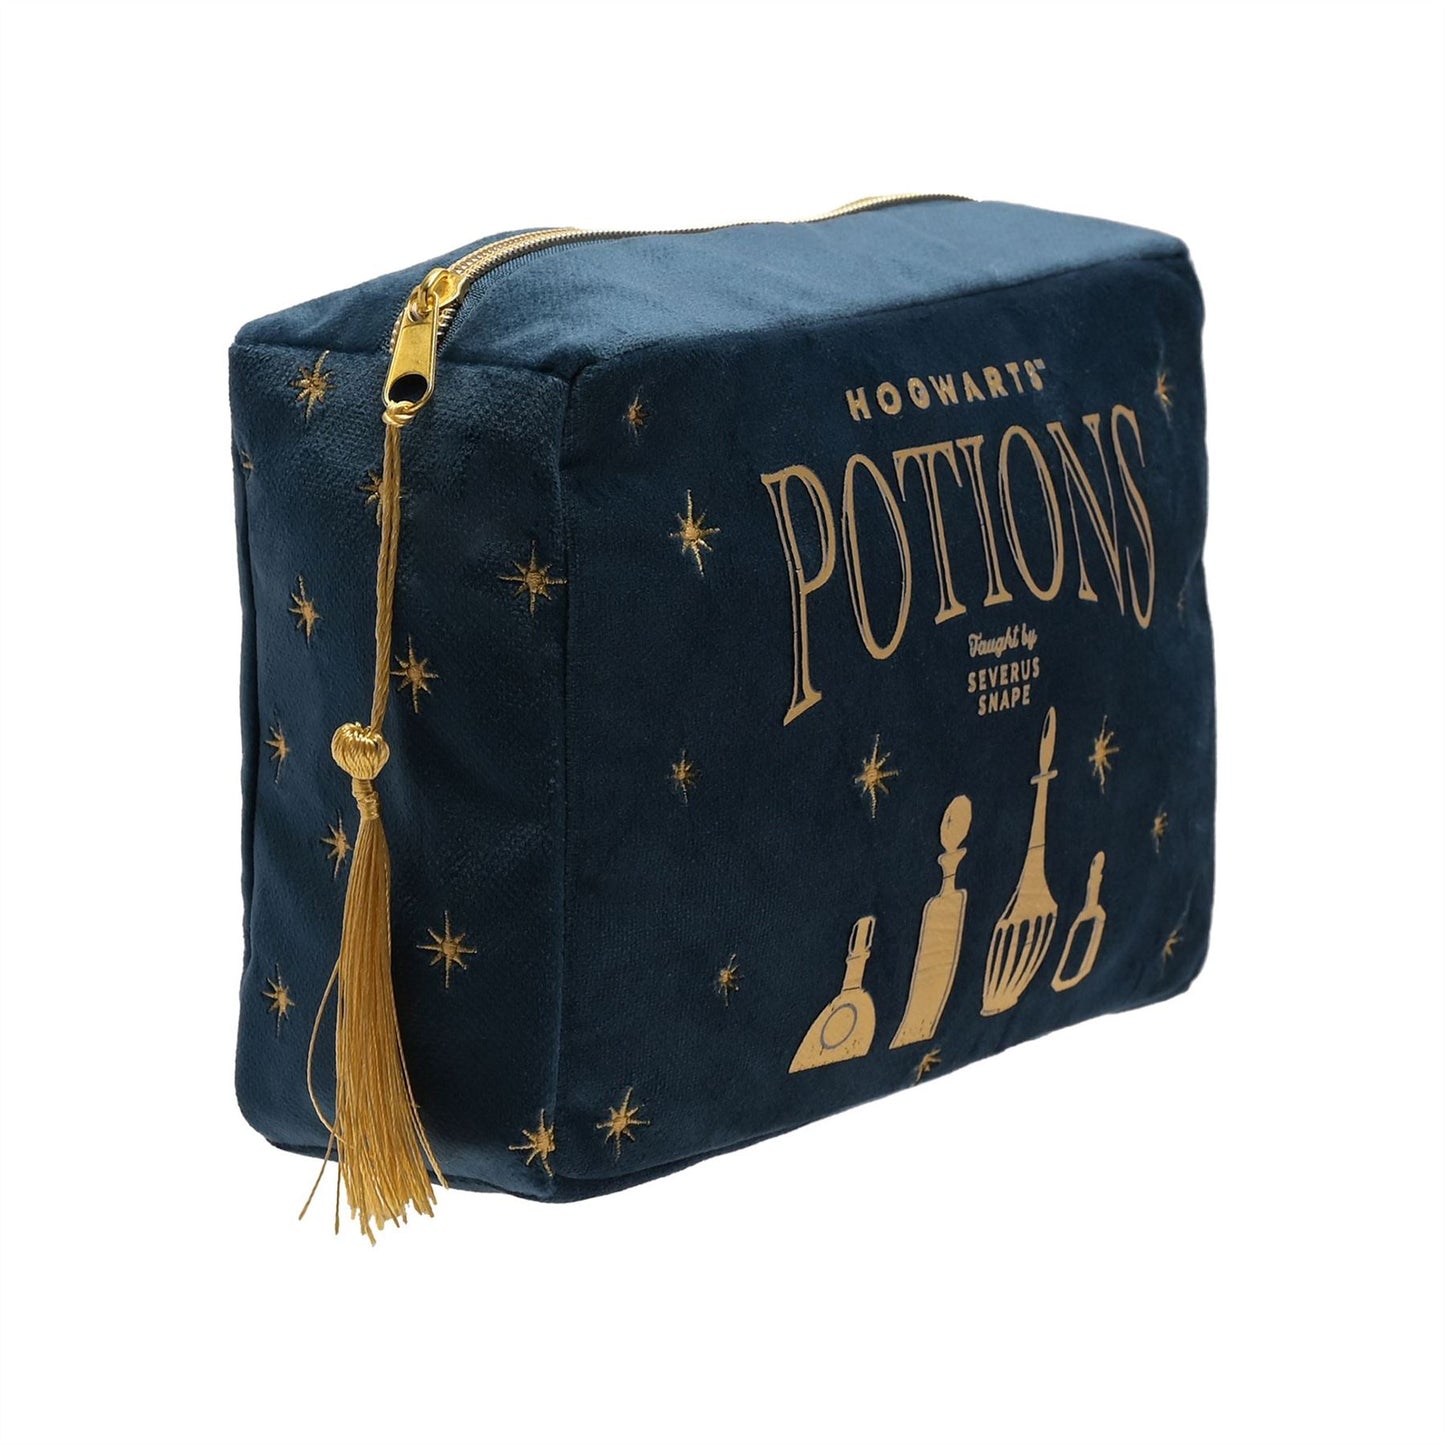 Warner Bros Harry Potter Alumni Wash Bag Potions